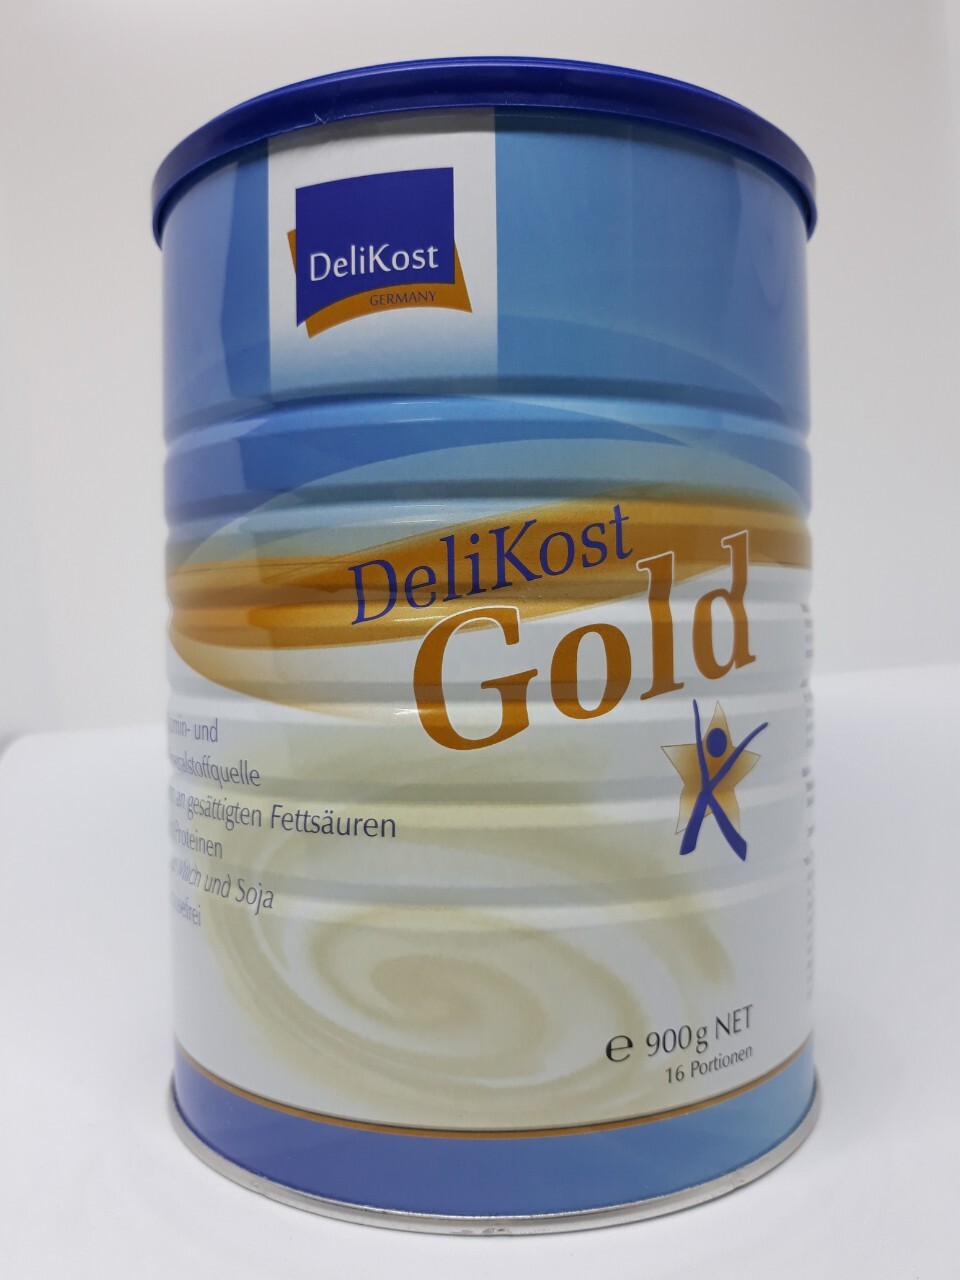 Sữa Delikost Gold - 900g, cho bệnh nhân ung thư